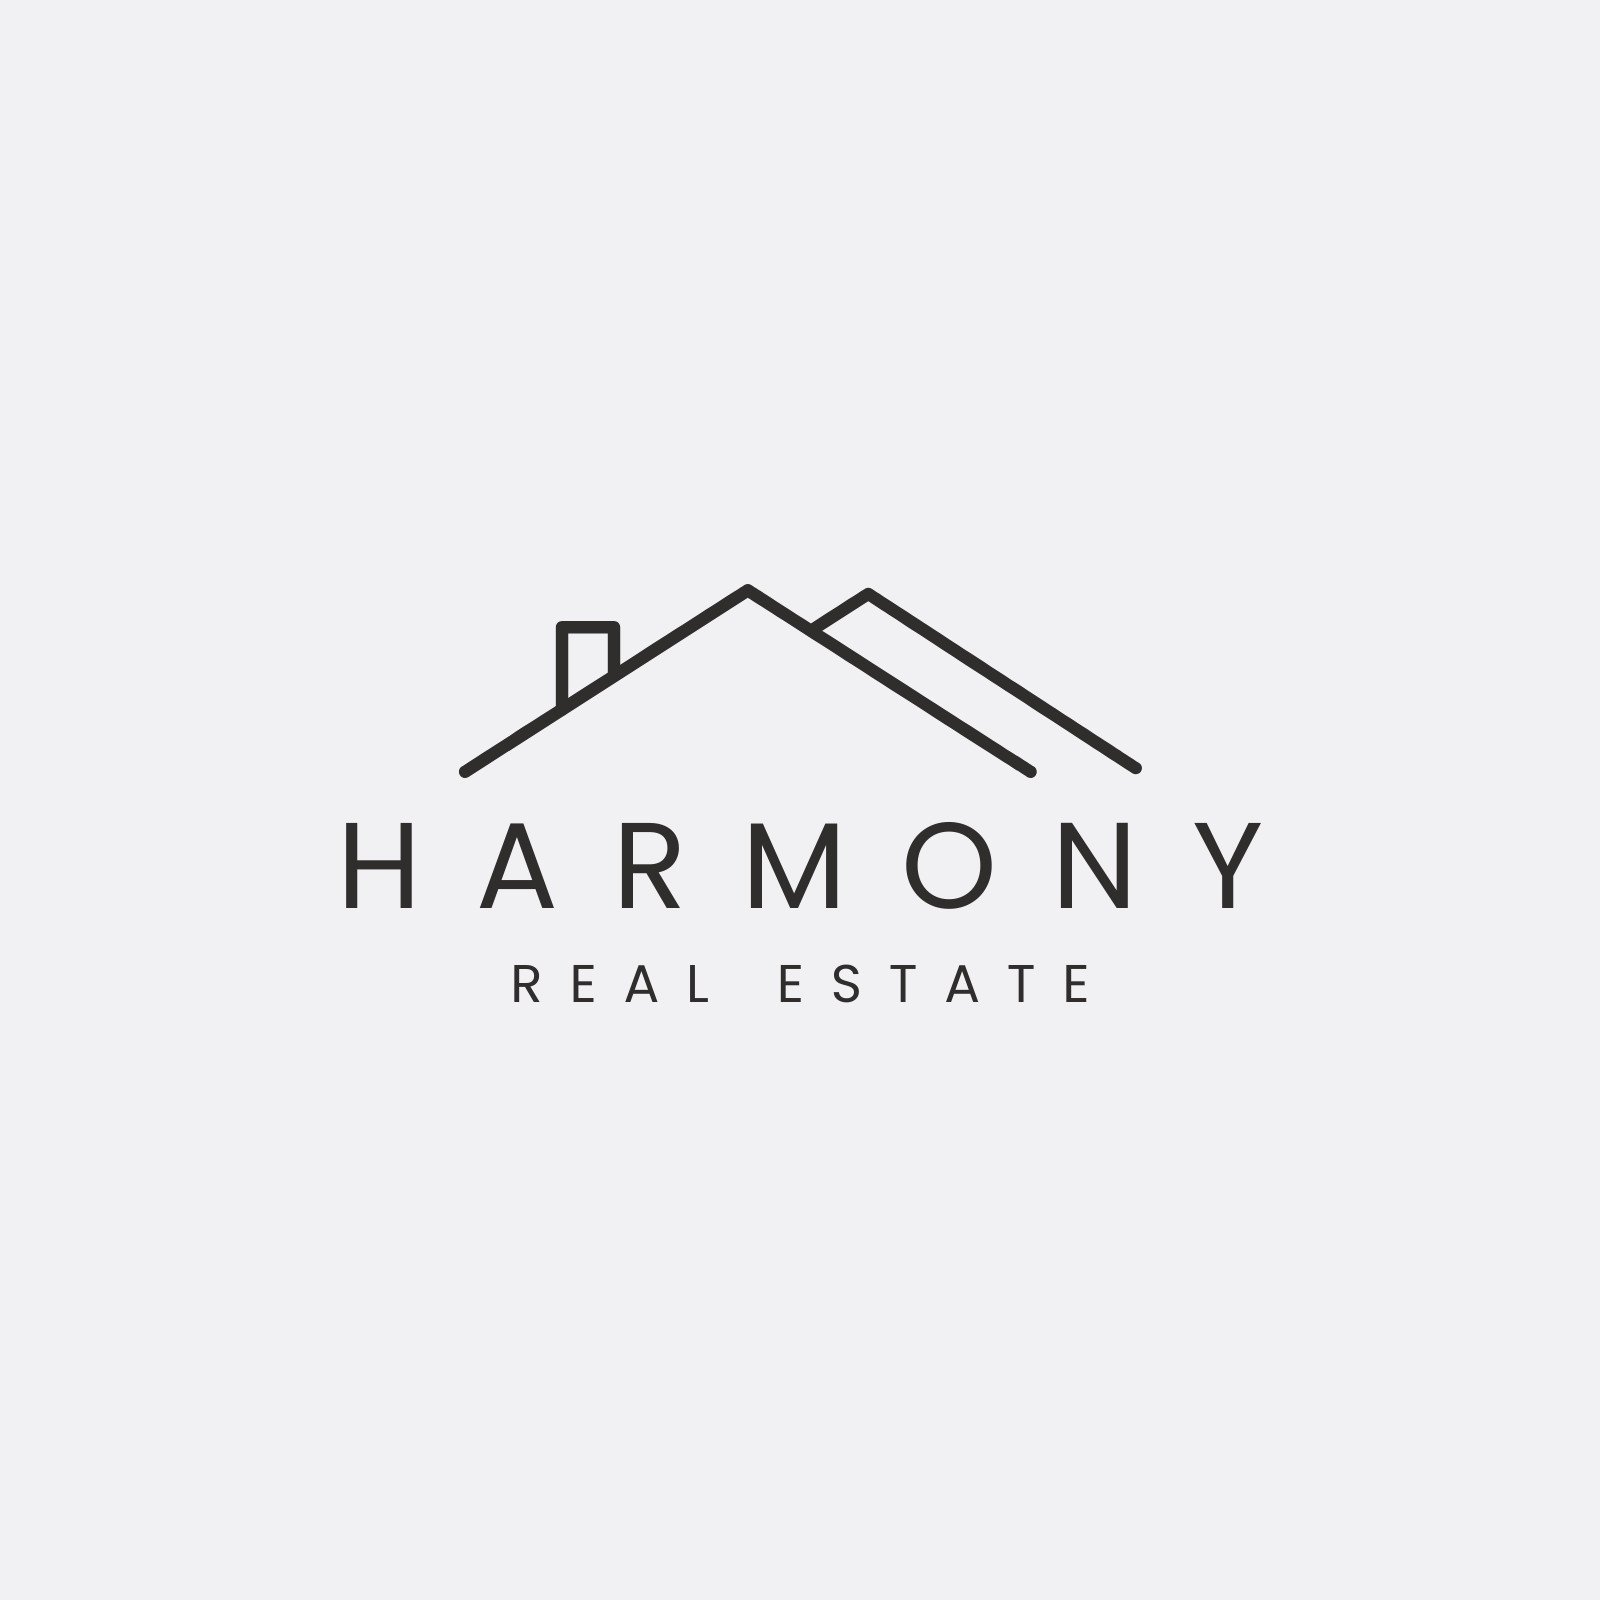 Real Estate House Logo | BrandCrowd Logo Maker